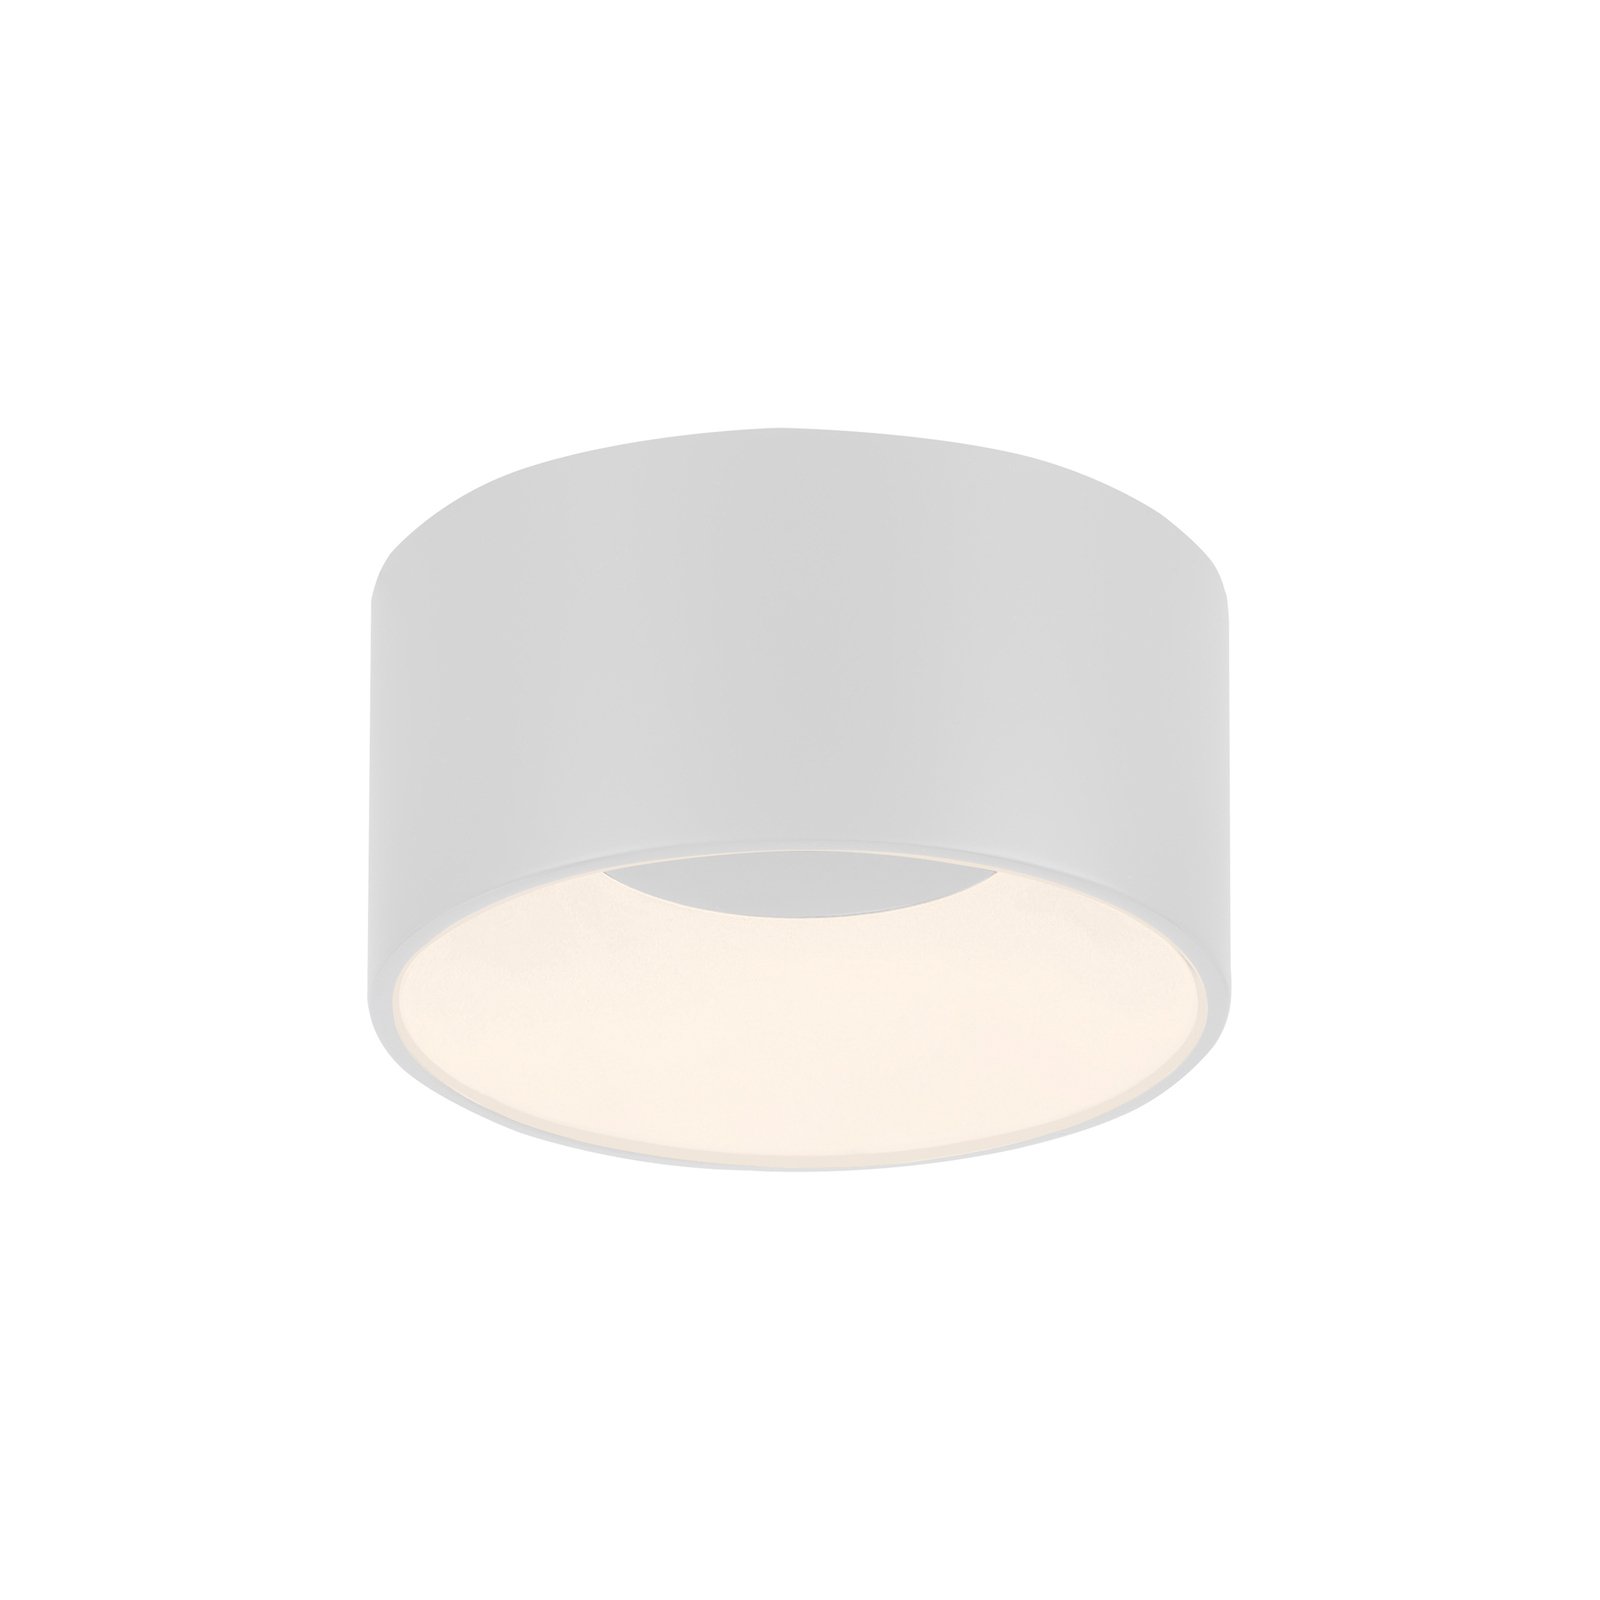 JUST LIGHT. Tanika plafondlamp, wit, Ø 16 cm, dimbaar